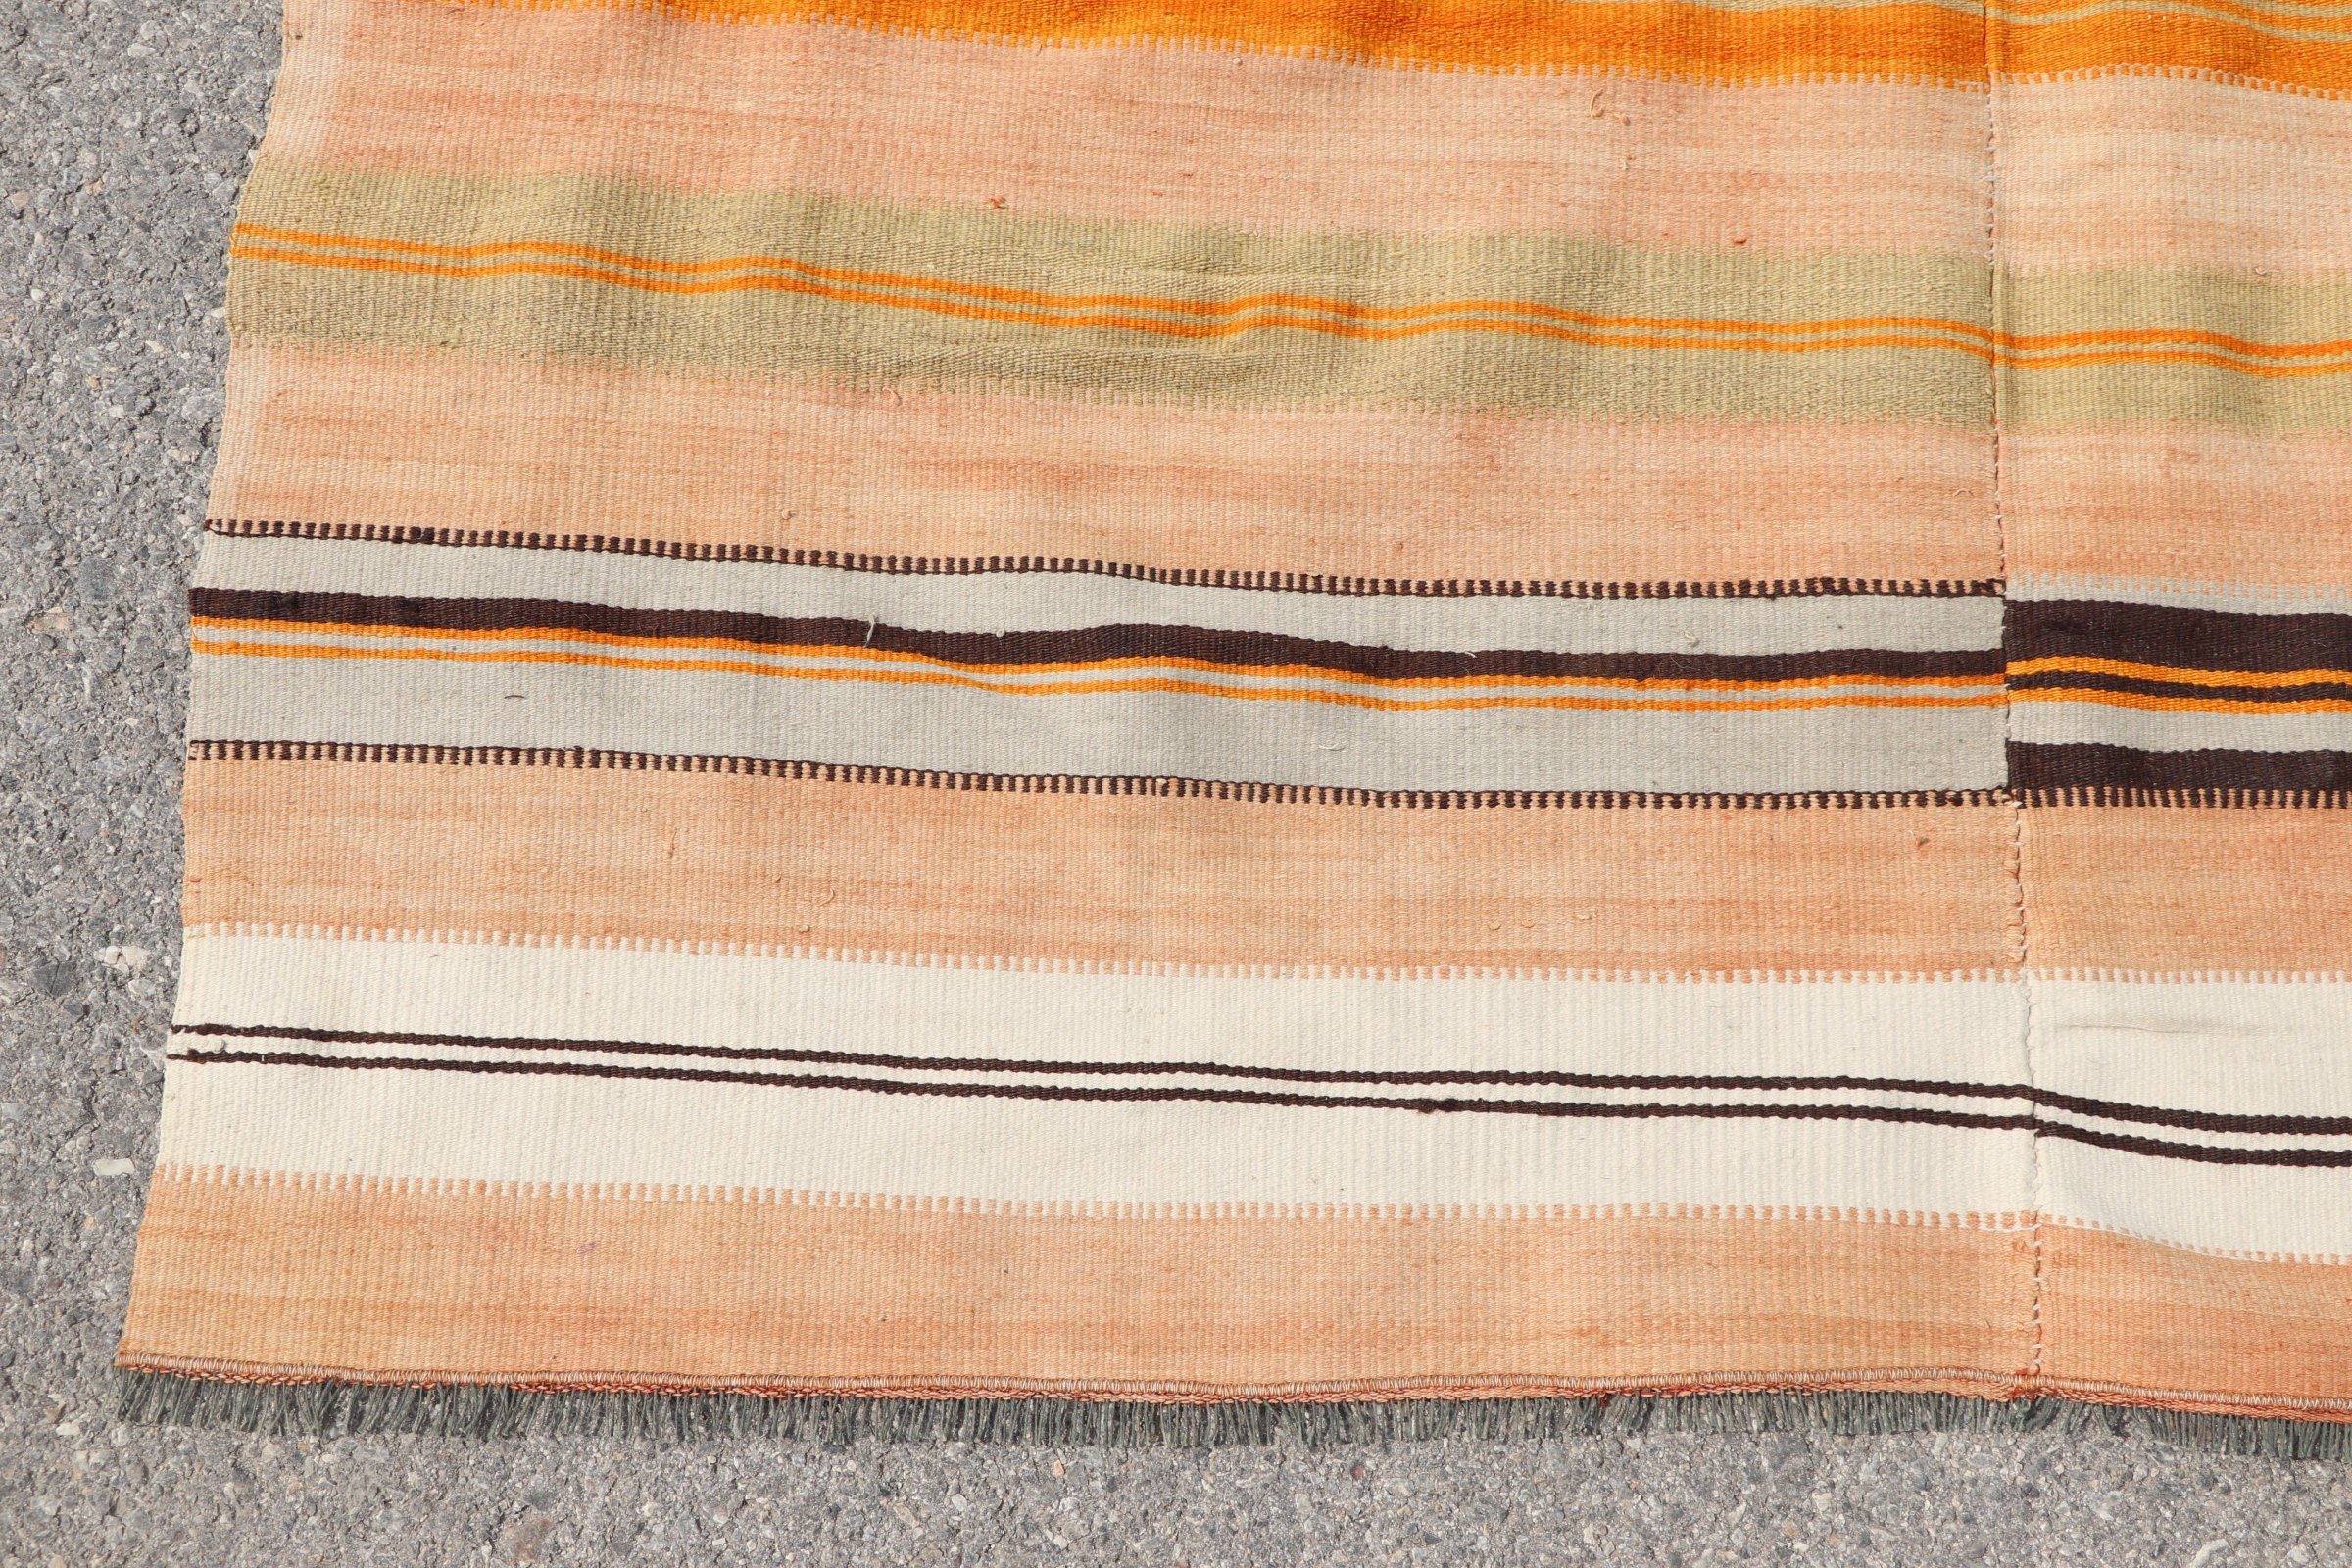 Turkish Rug, Orange Wool Rug, Oushak Rugs, Wool Rugs, Kilim, Vintage Rugs, Aztec Rug, 4.2x6.8 ft Area Rug, Living Room Rug, Dining Room Rug